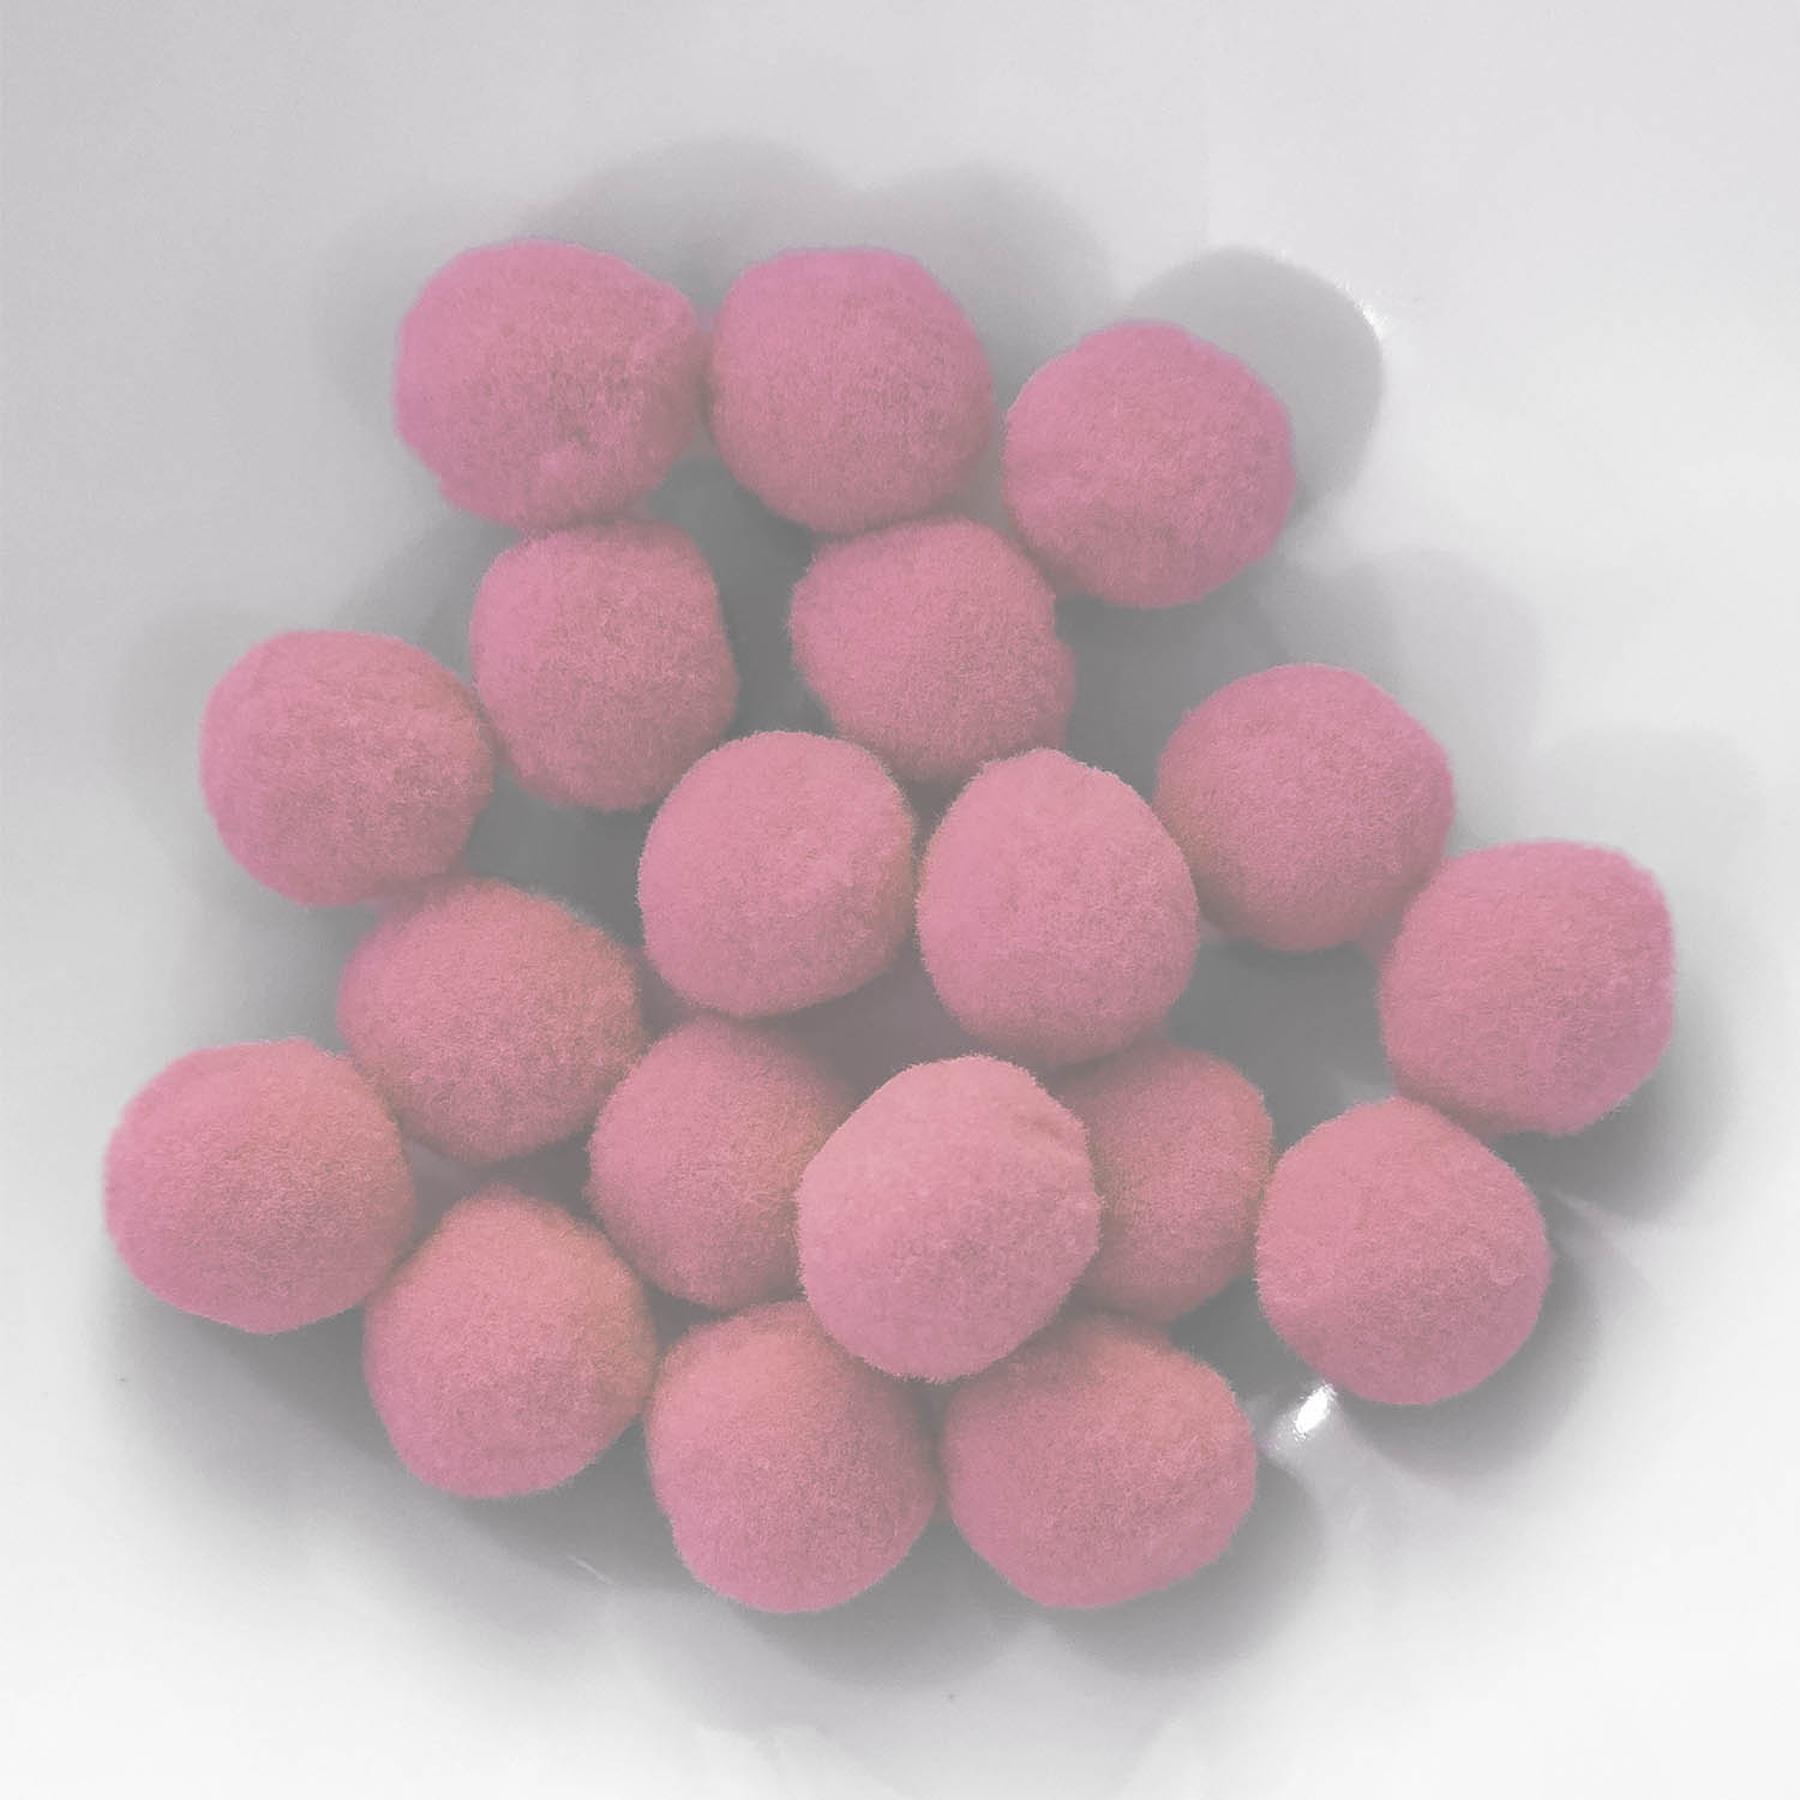 PomPon / Bälle aus Baumwolle - 25 mm / 20er Set - Pink hell